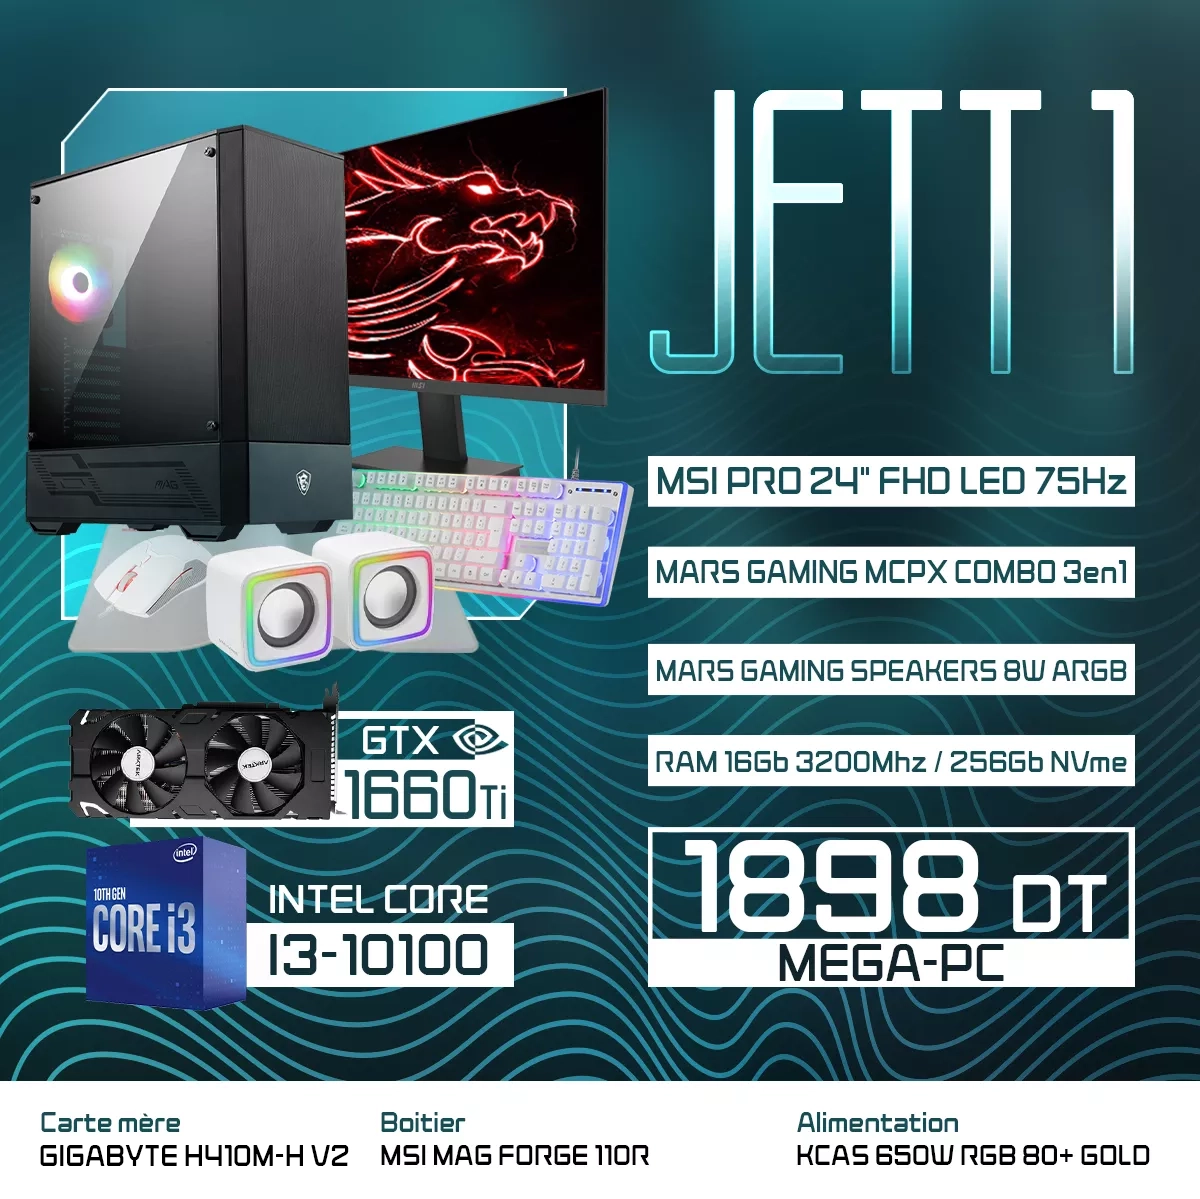  JETT 1 | I3-10100 | GTX 1660 TI | 16GB RAM | 256GB NVMe